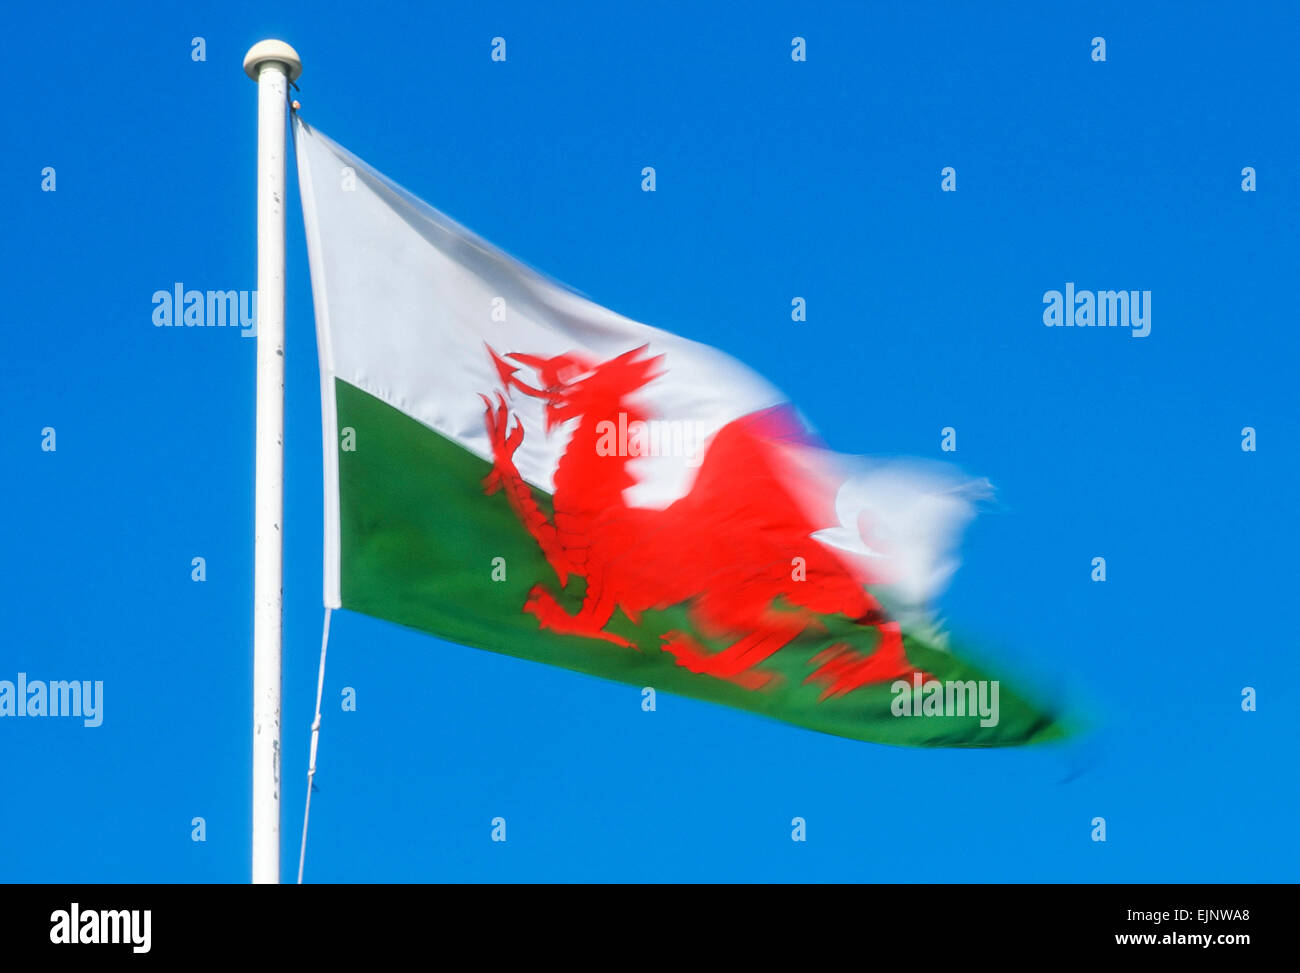 Drapeau gallois soufflant dans le vent sur fond bleu ciel, Cardiff, pays de Galles, Royaume-Uni, GB, Europe Banque D'Images